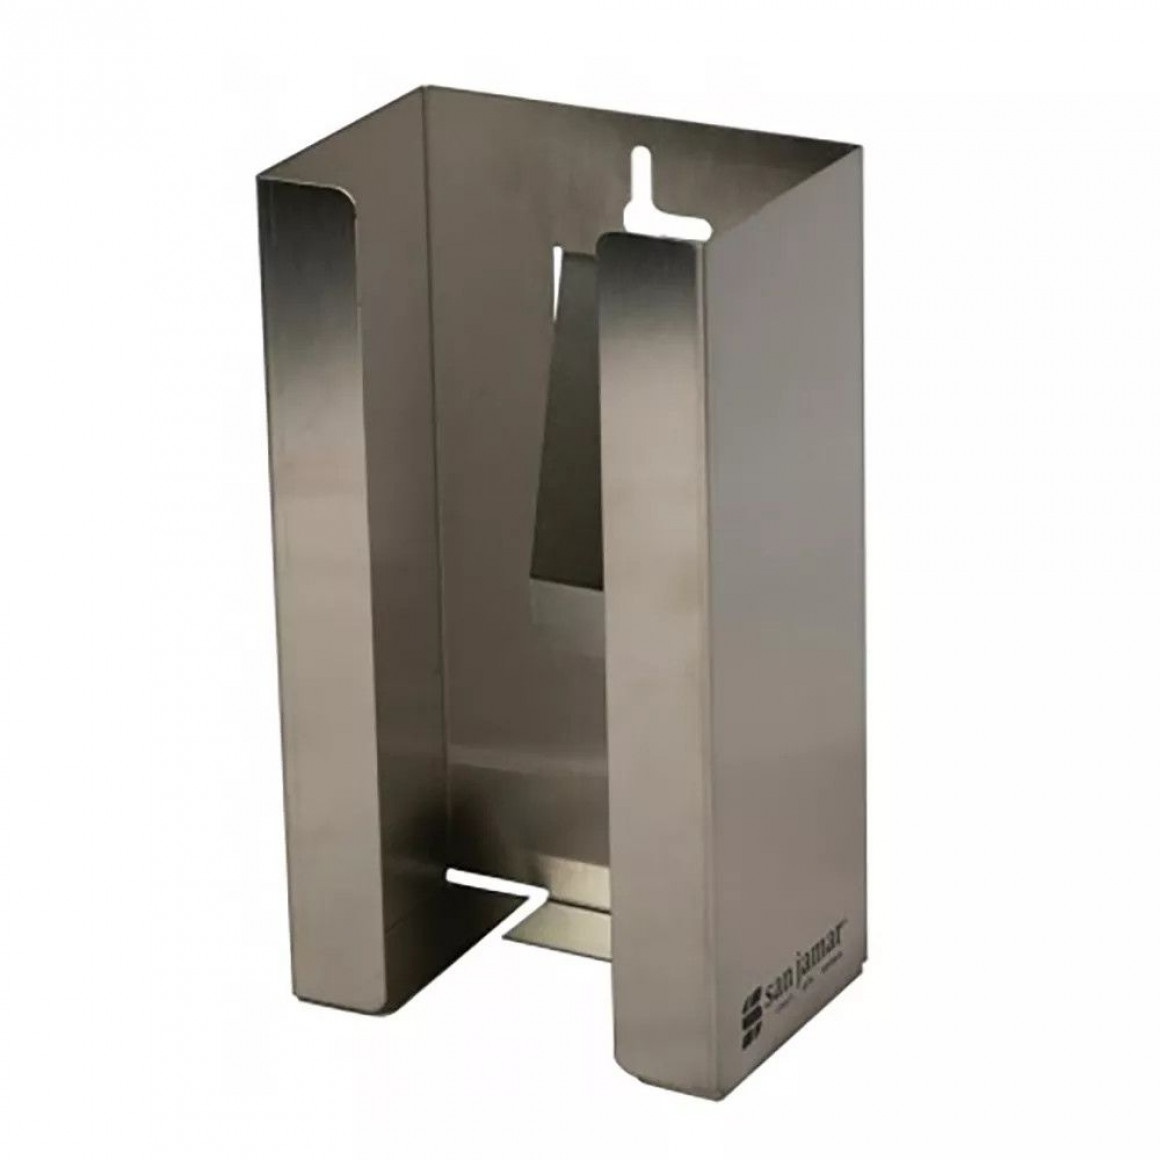 Disposable Glove Dispenser - 1 Box Capacity - White Baked Enamel